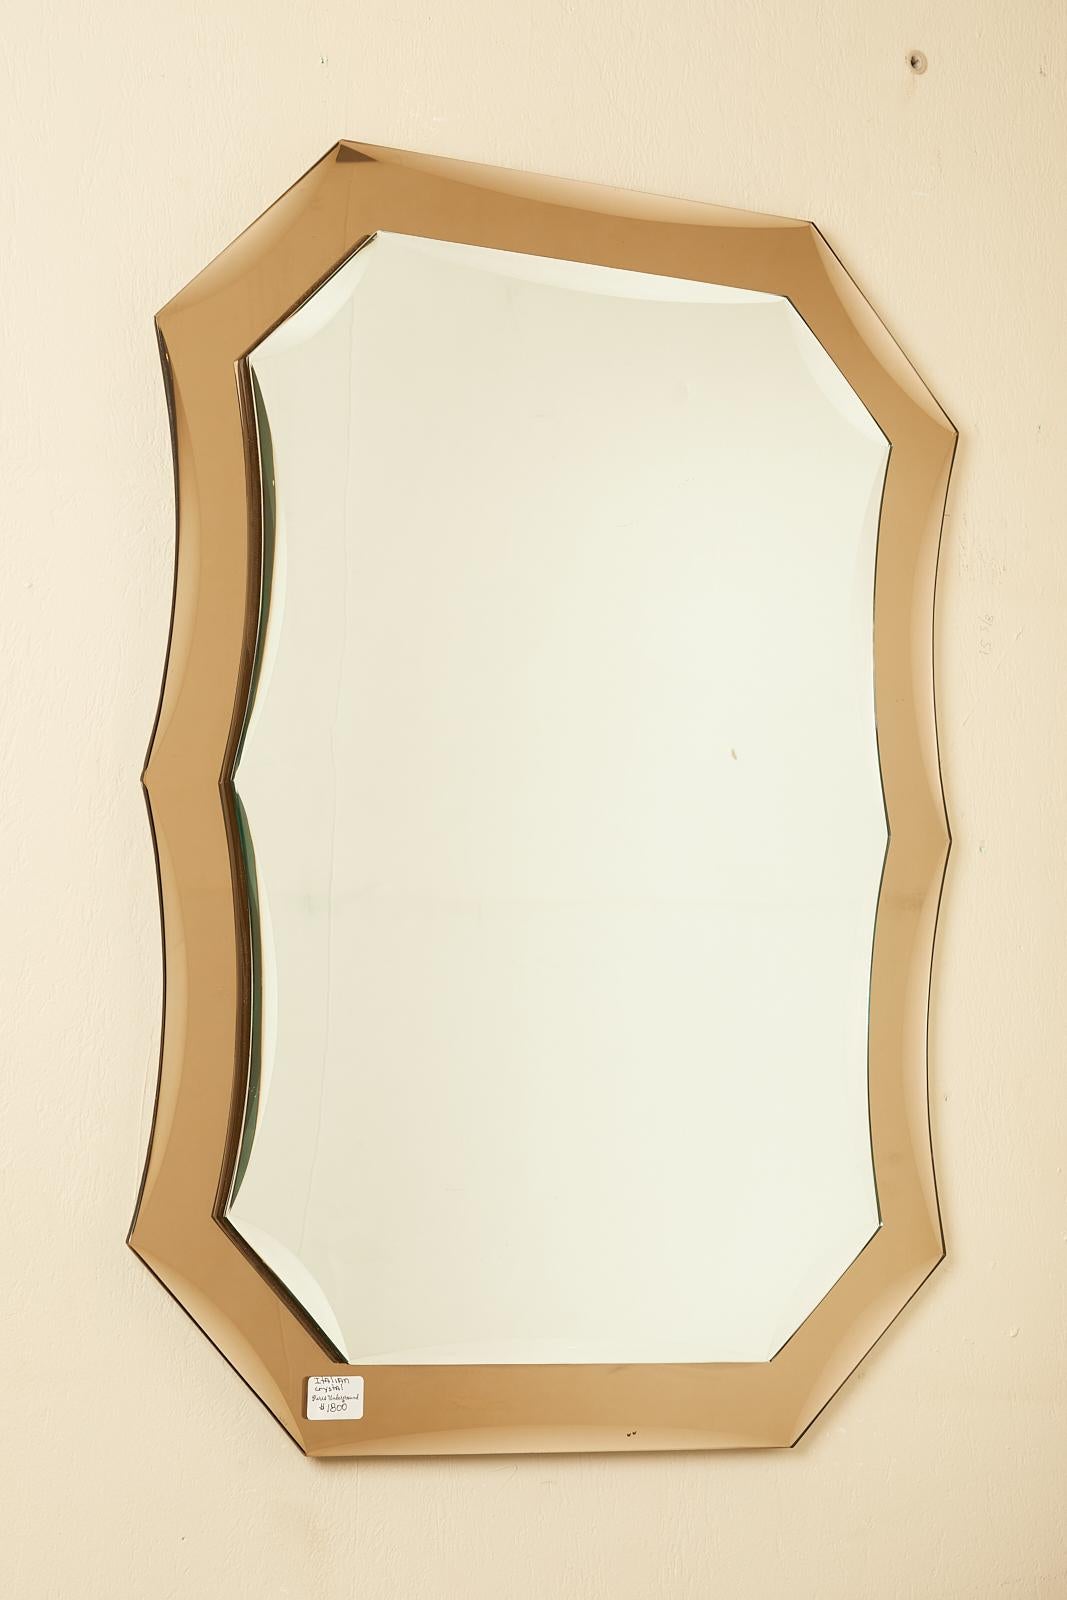 1970s Italian Murano glass mirror in amber.